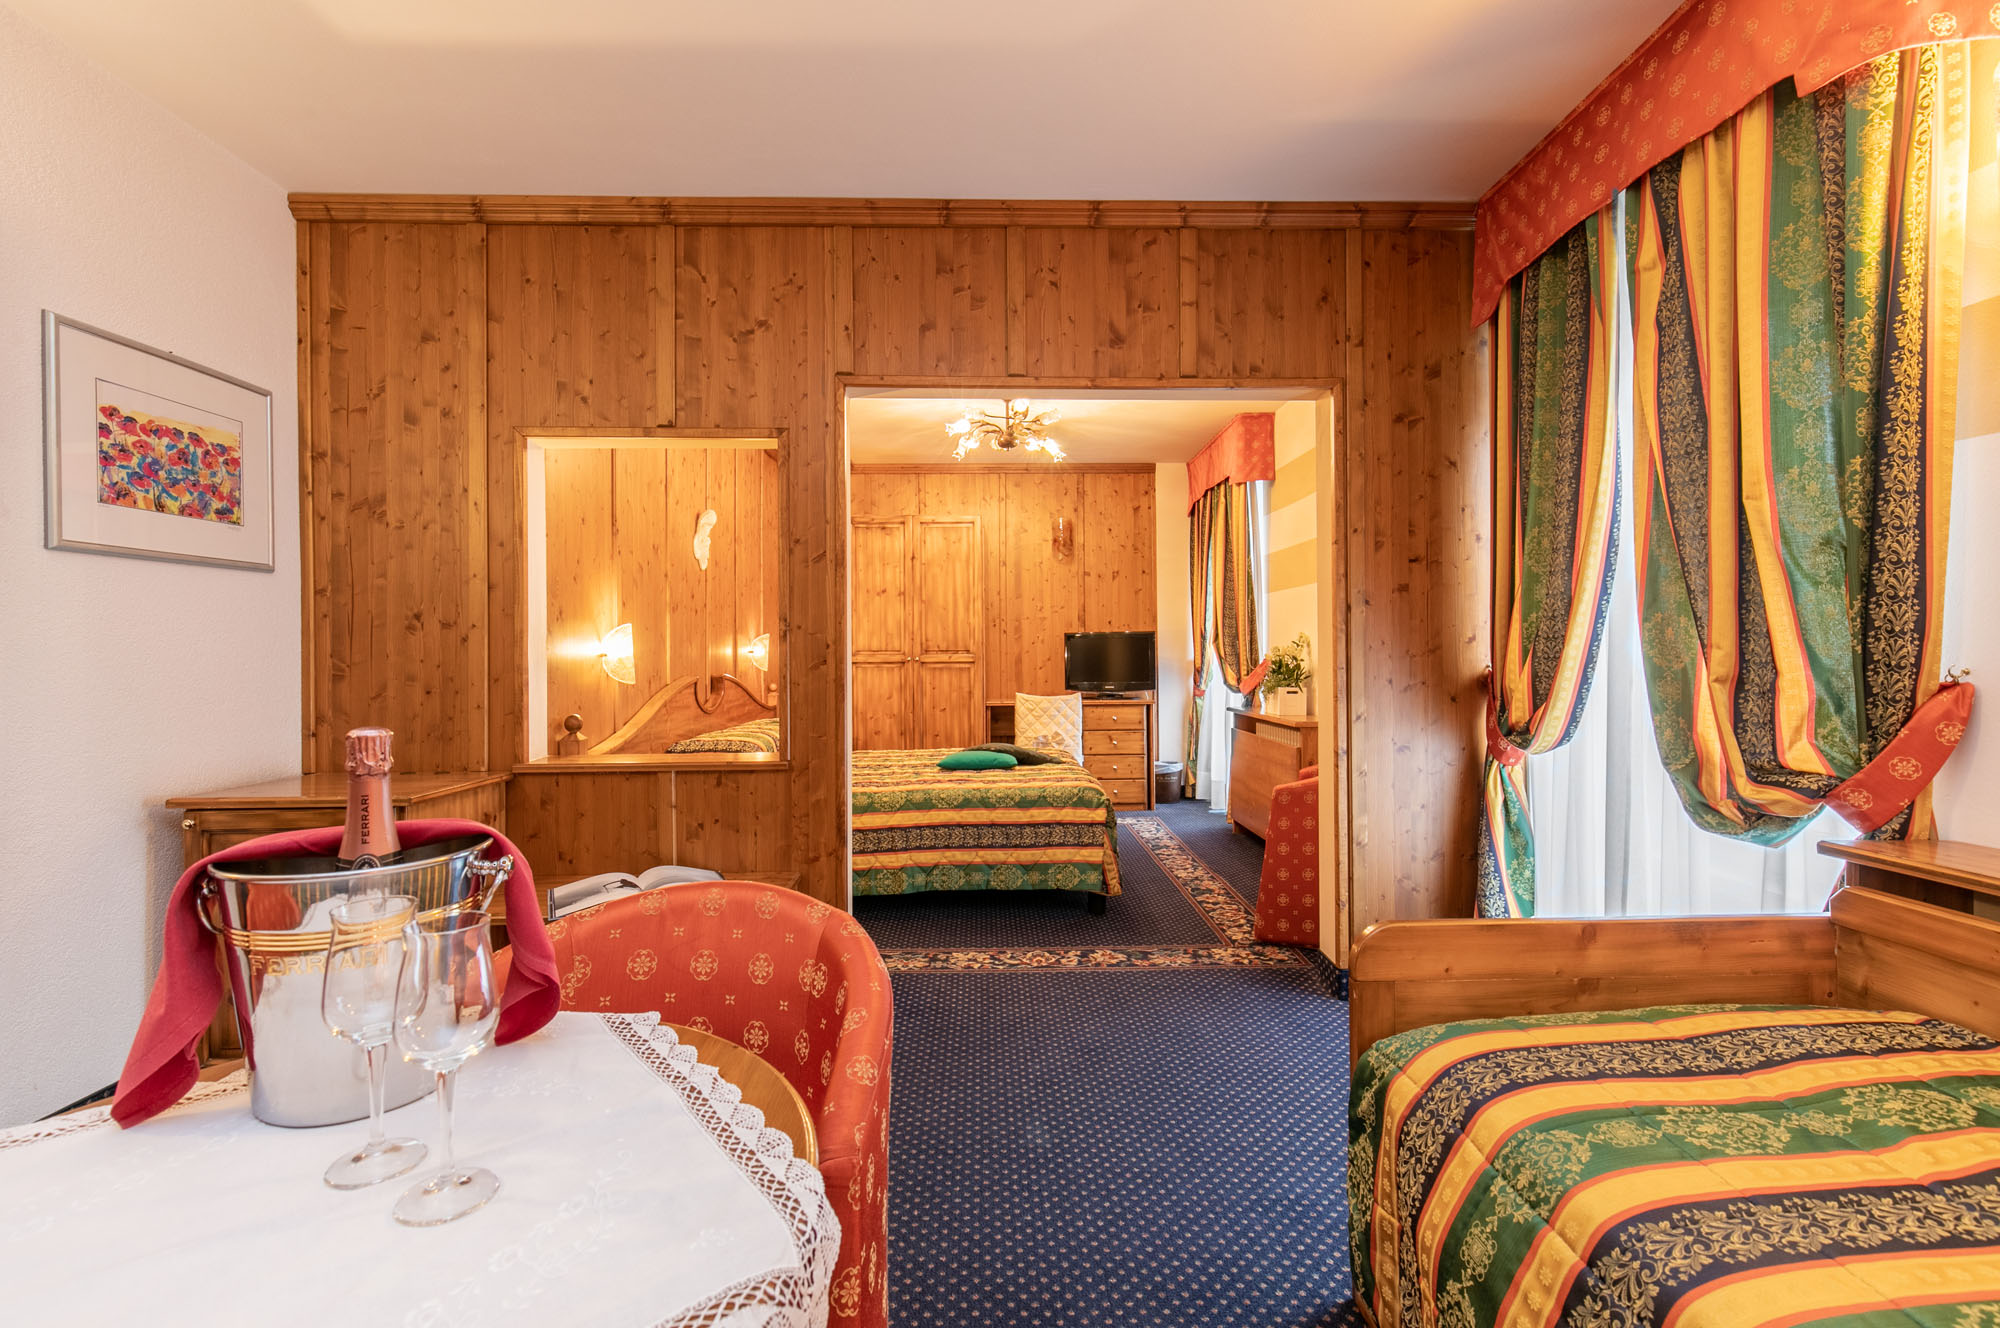 Camera Superior Room per 4 persone di Grand Hotel des Alpes in centro a San Martino di Castrozza